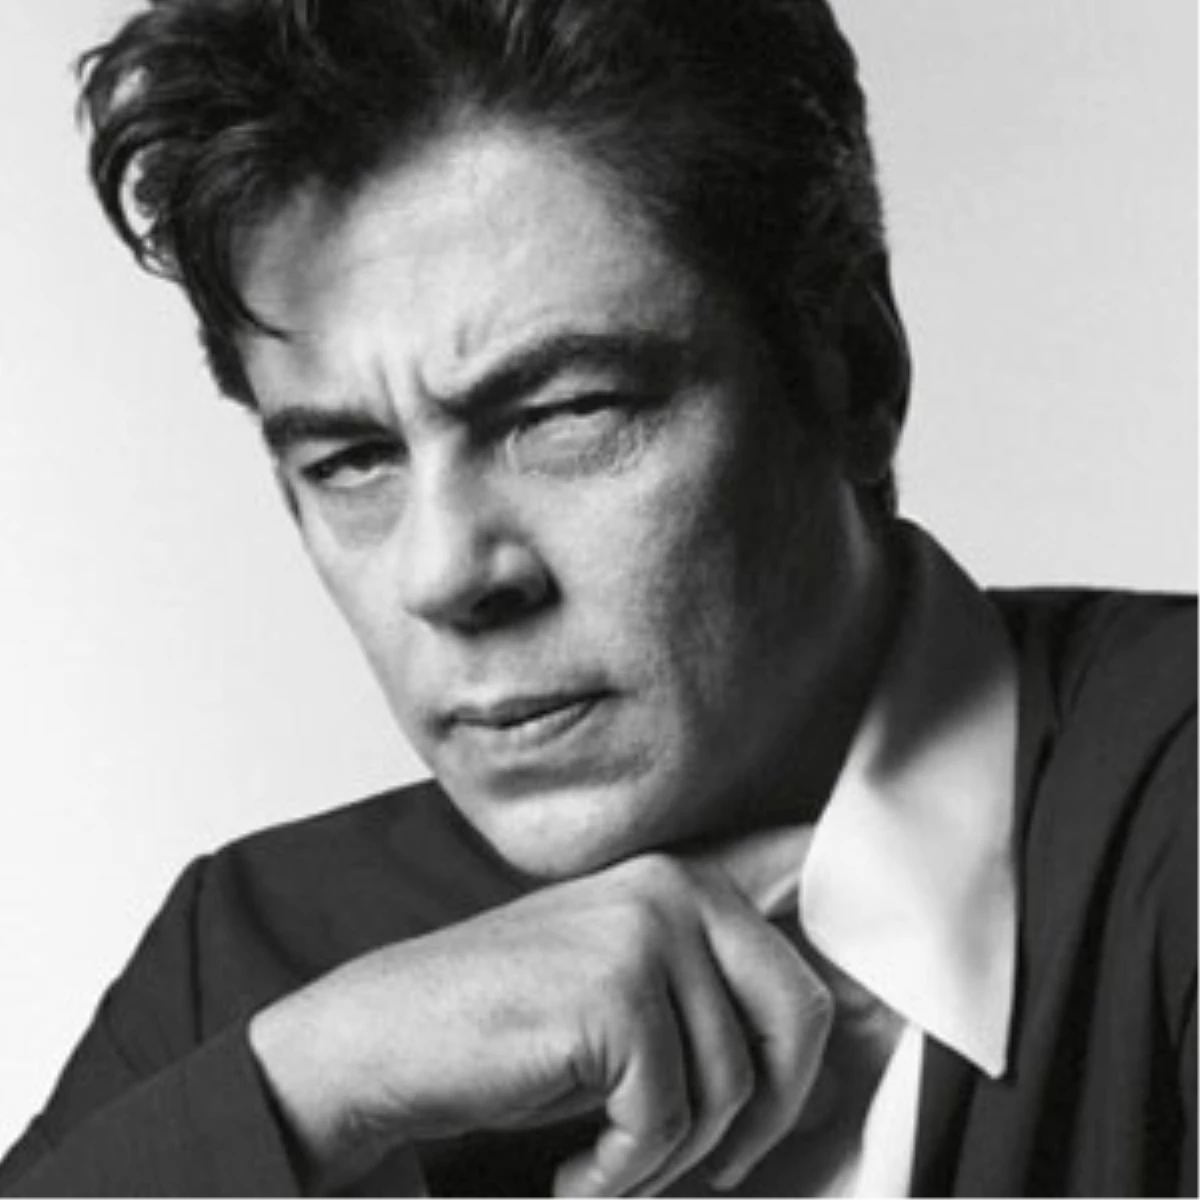 Model Benicio